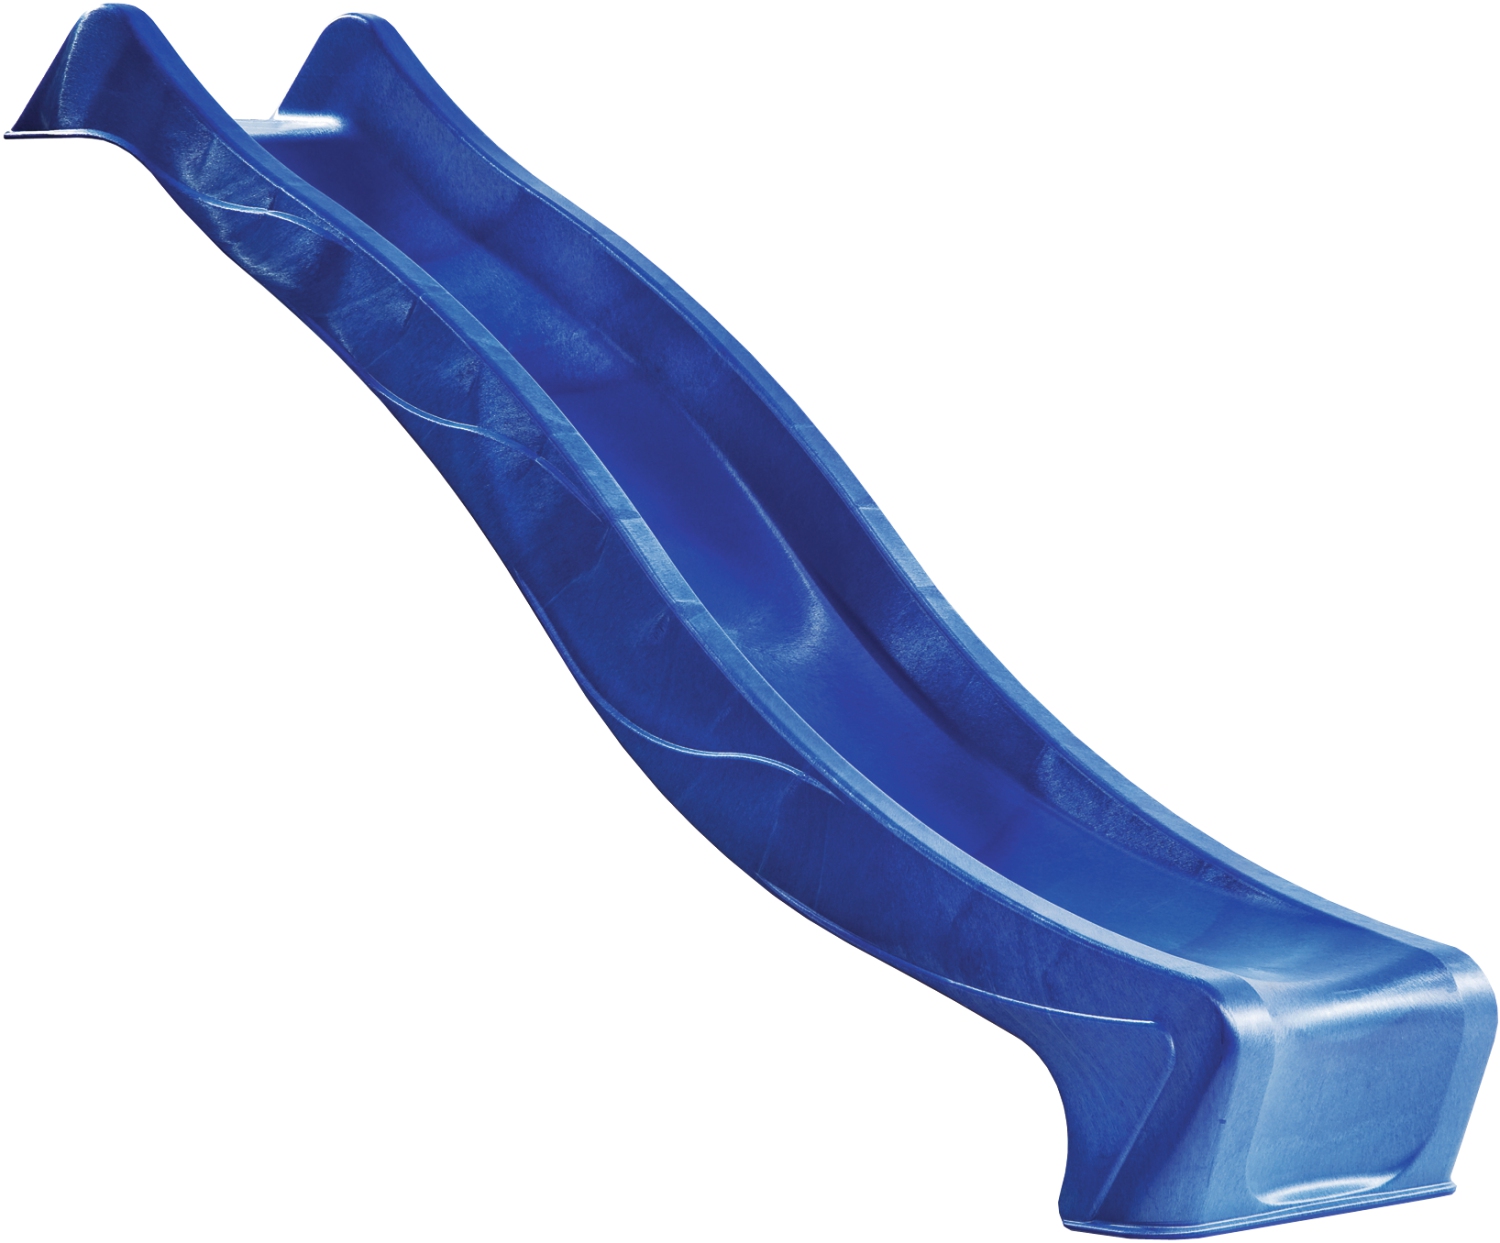 IMPOS Rutsche Wellenform 235 cm, blau